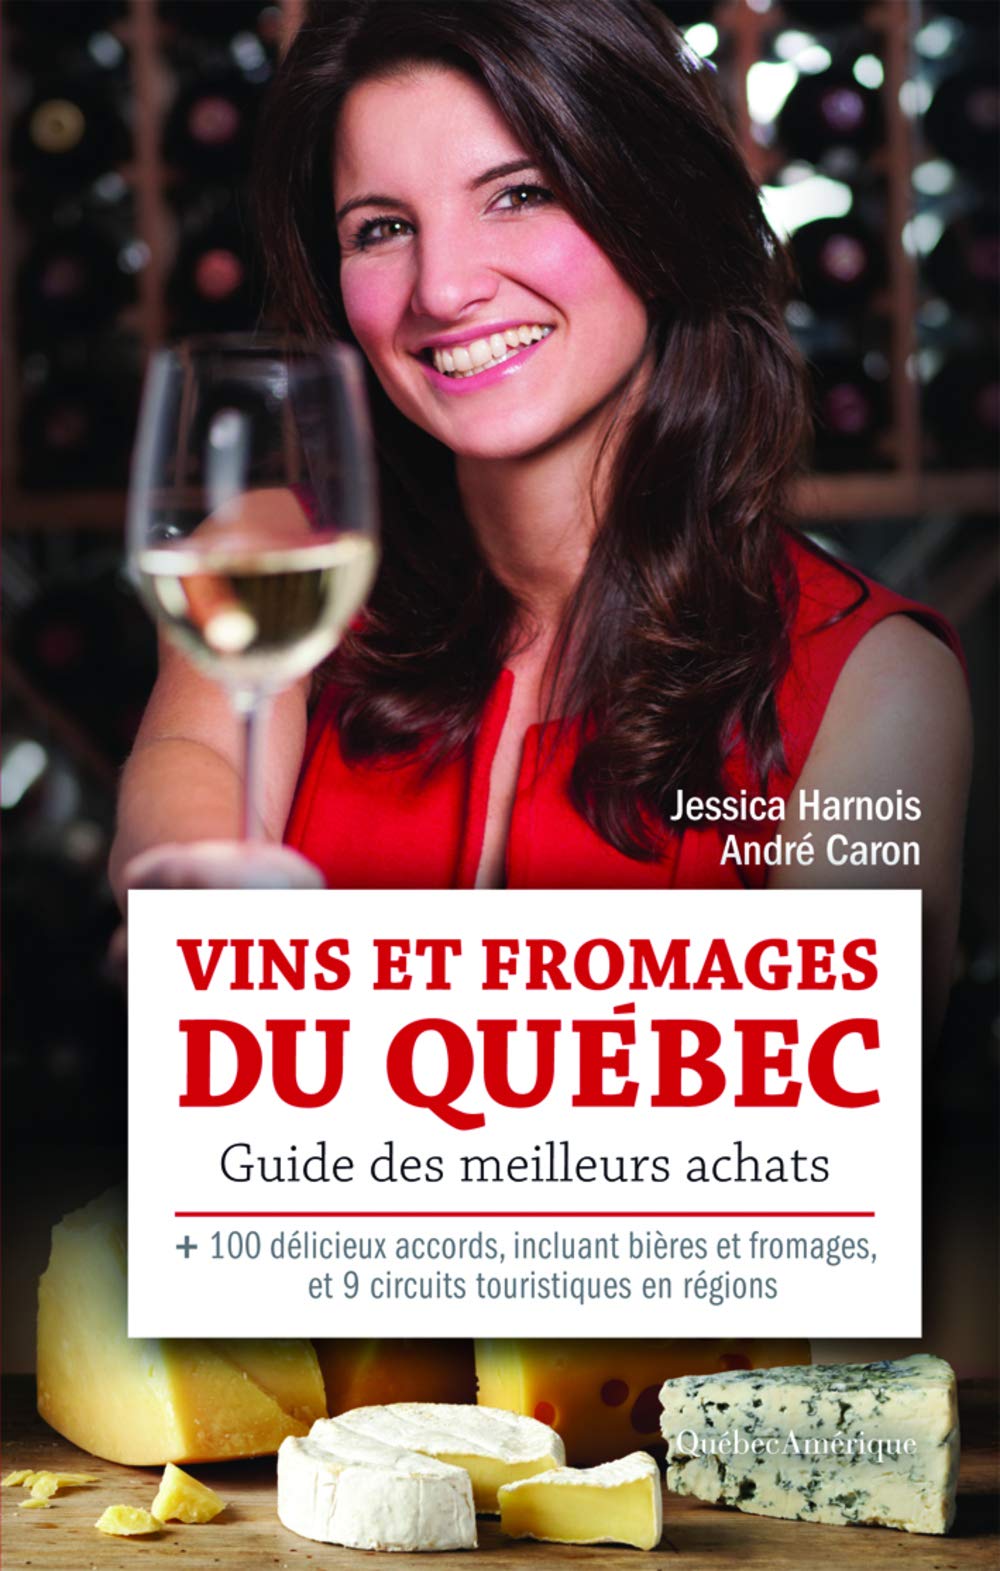 Vins et fromages du Québec : guide des meilleurs achats - Jessica Harnois